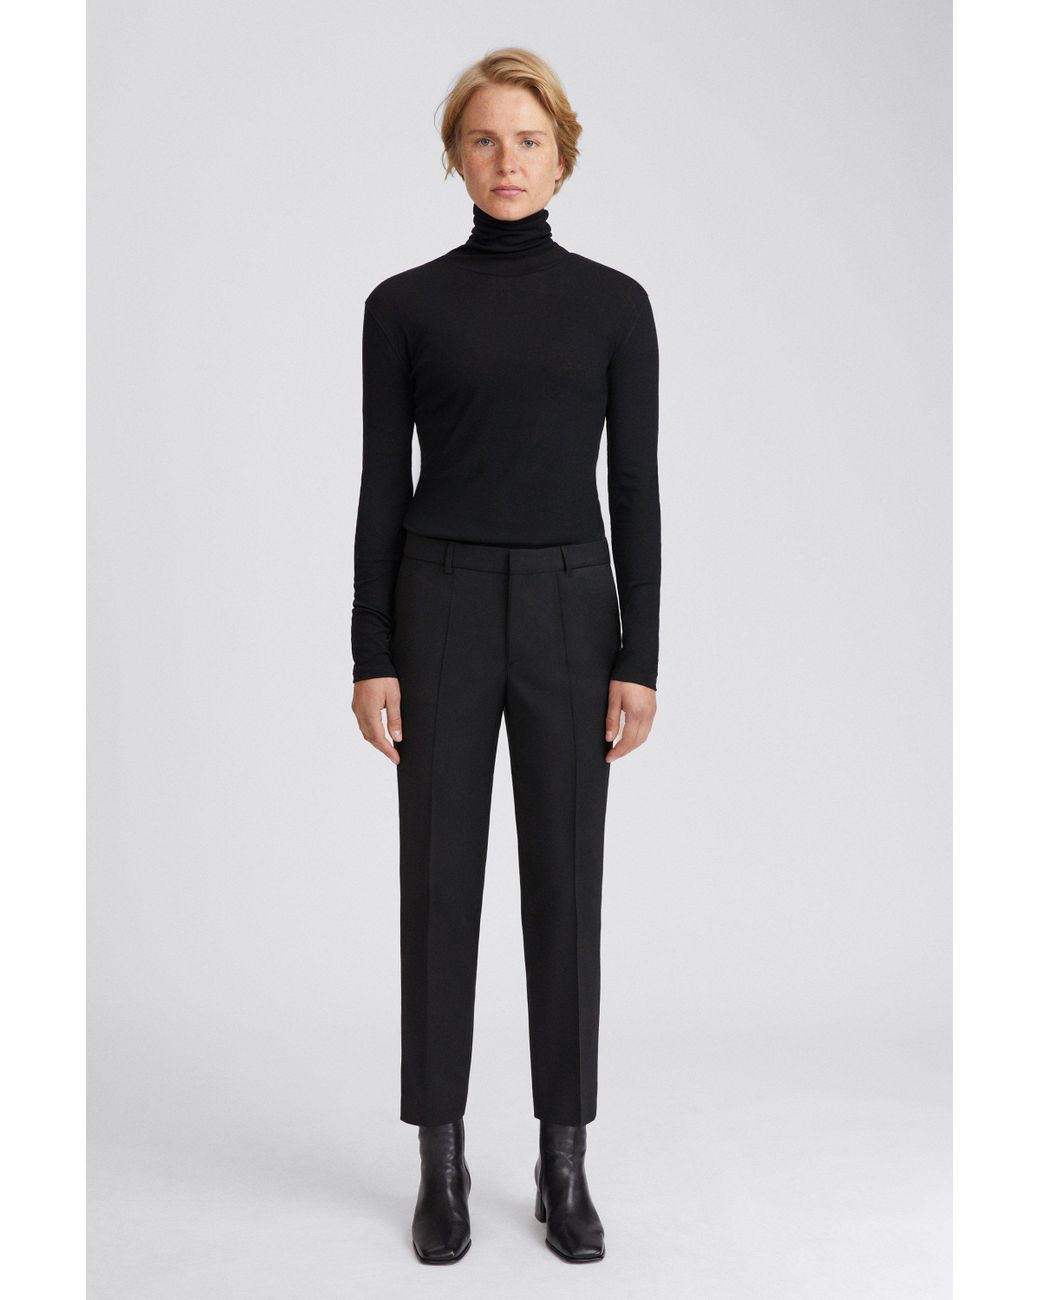 Filippa K Emma Cropped Cool Wool Trouser in Black - Lyst